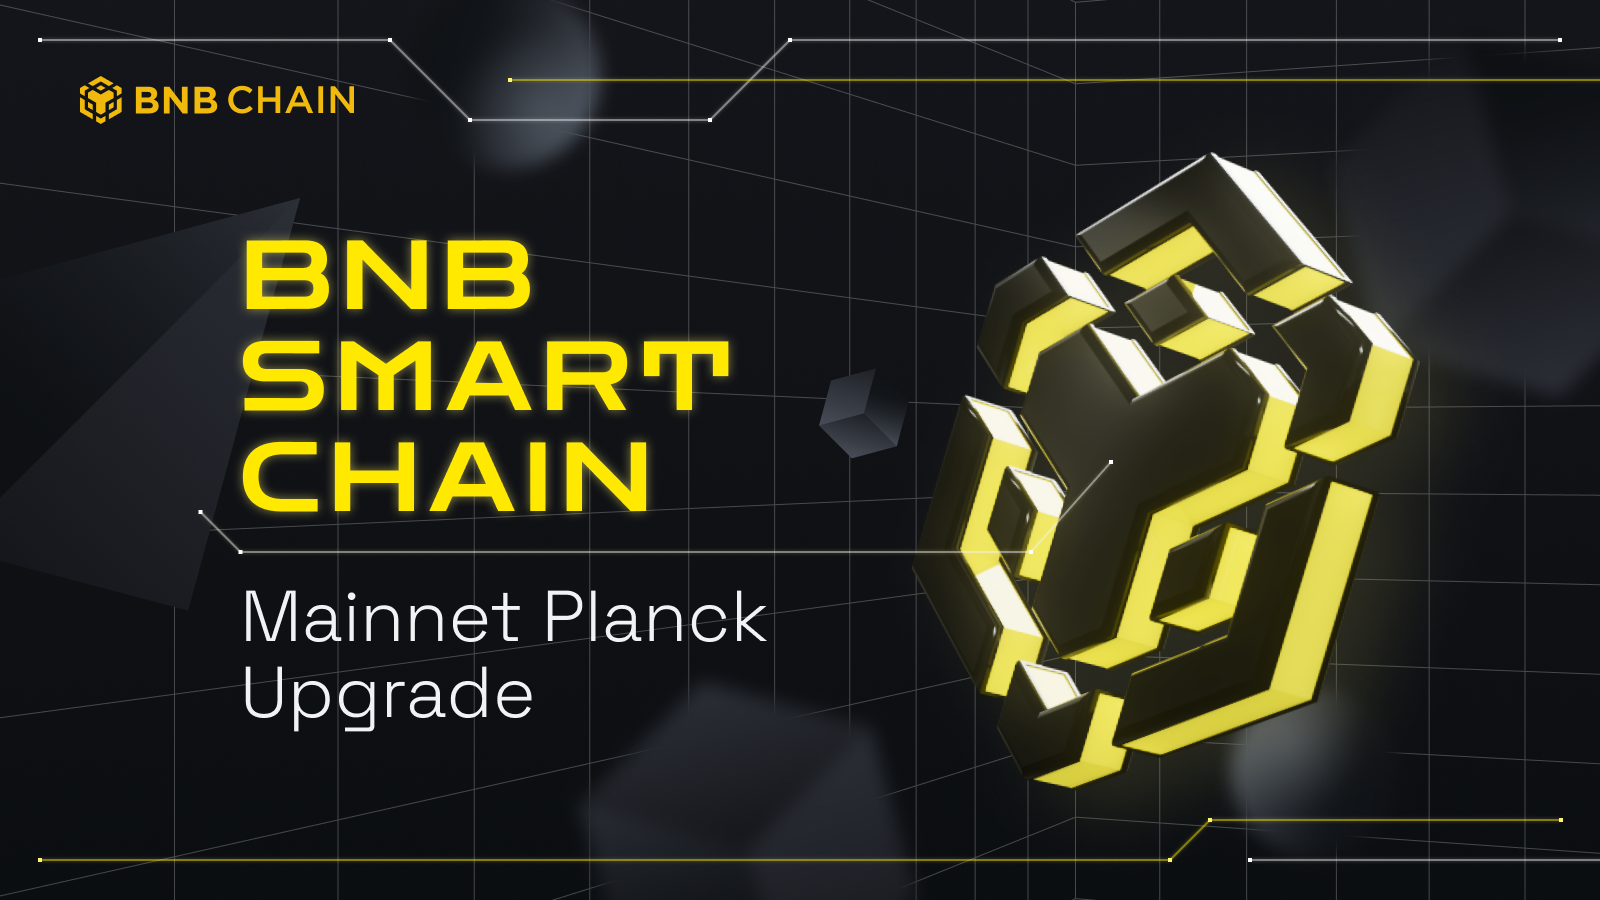 Thông báo nâng cấp BNB Smart Chain Mainnet: “Planck Update”.